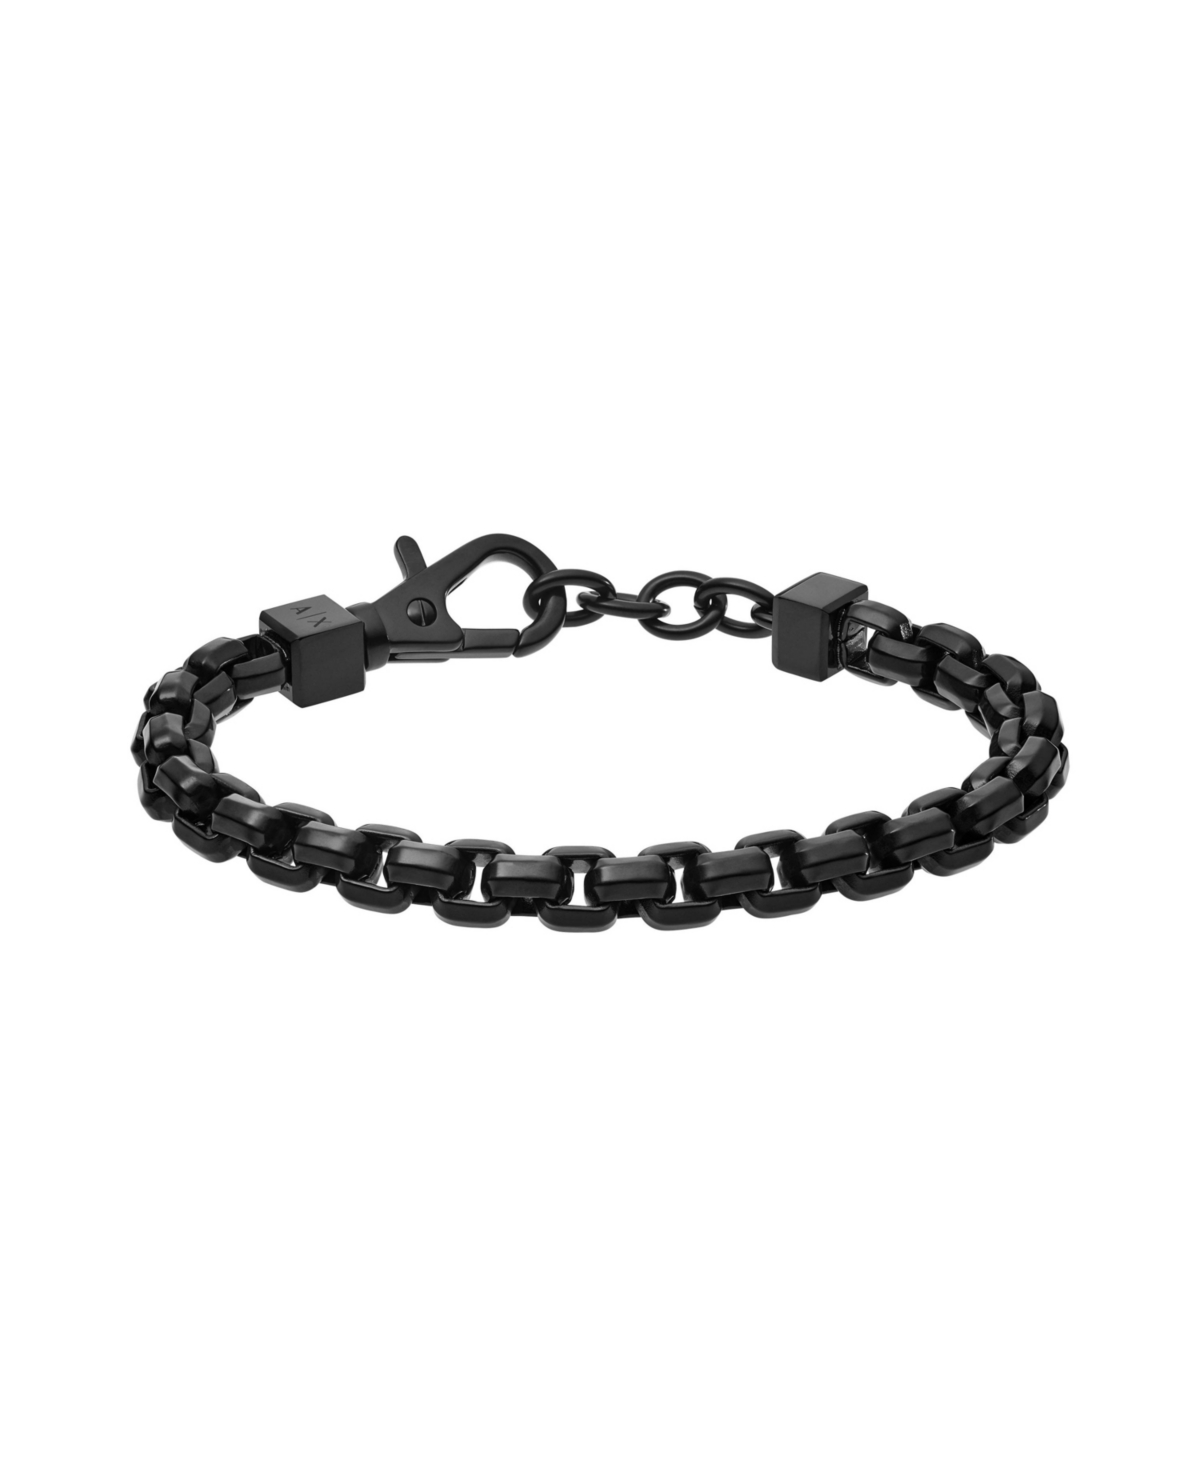 Men's Black Stainless Steel Chain Bracelet - Black